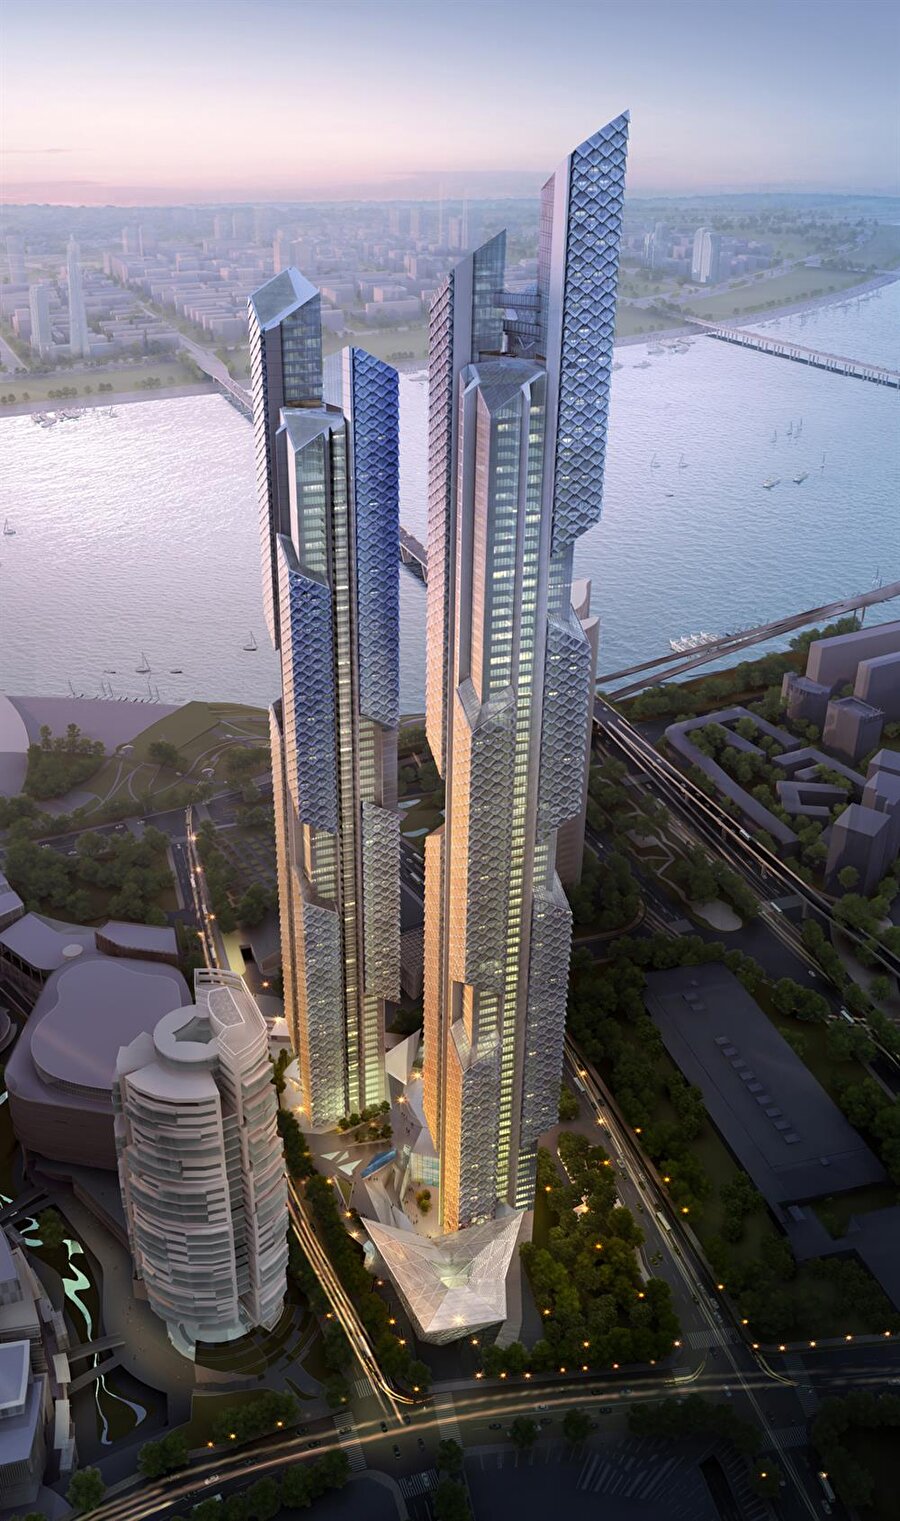 The Dancing Dragons, Seul (Güney Kore)

                                    
                                    İki kule şeklinde yapılması planlanan bu binalardan bir tanesi 77 diğeri ise 88 katlı olacak. Binanın dış tasarımı olarak da ejderhaların sırtlarından ilham alındığı söylenebilir.
                                
                                